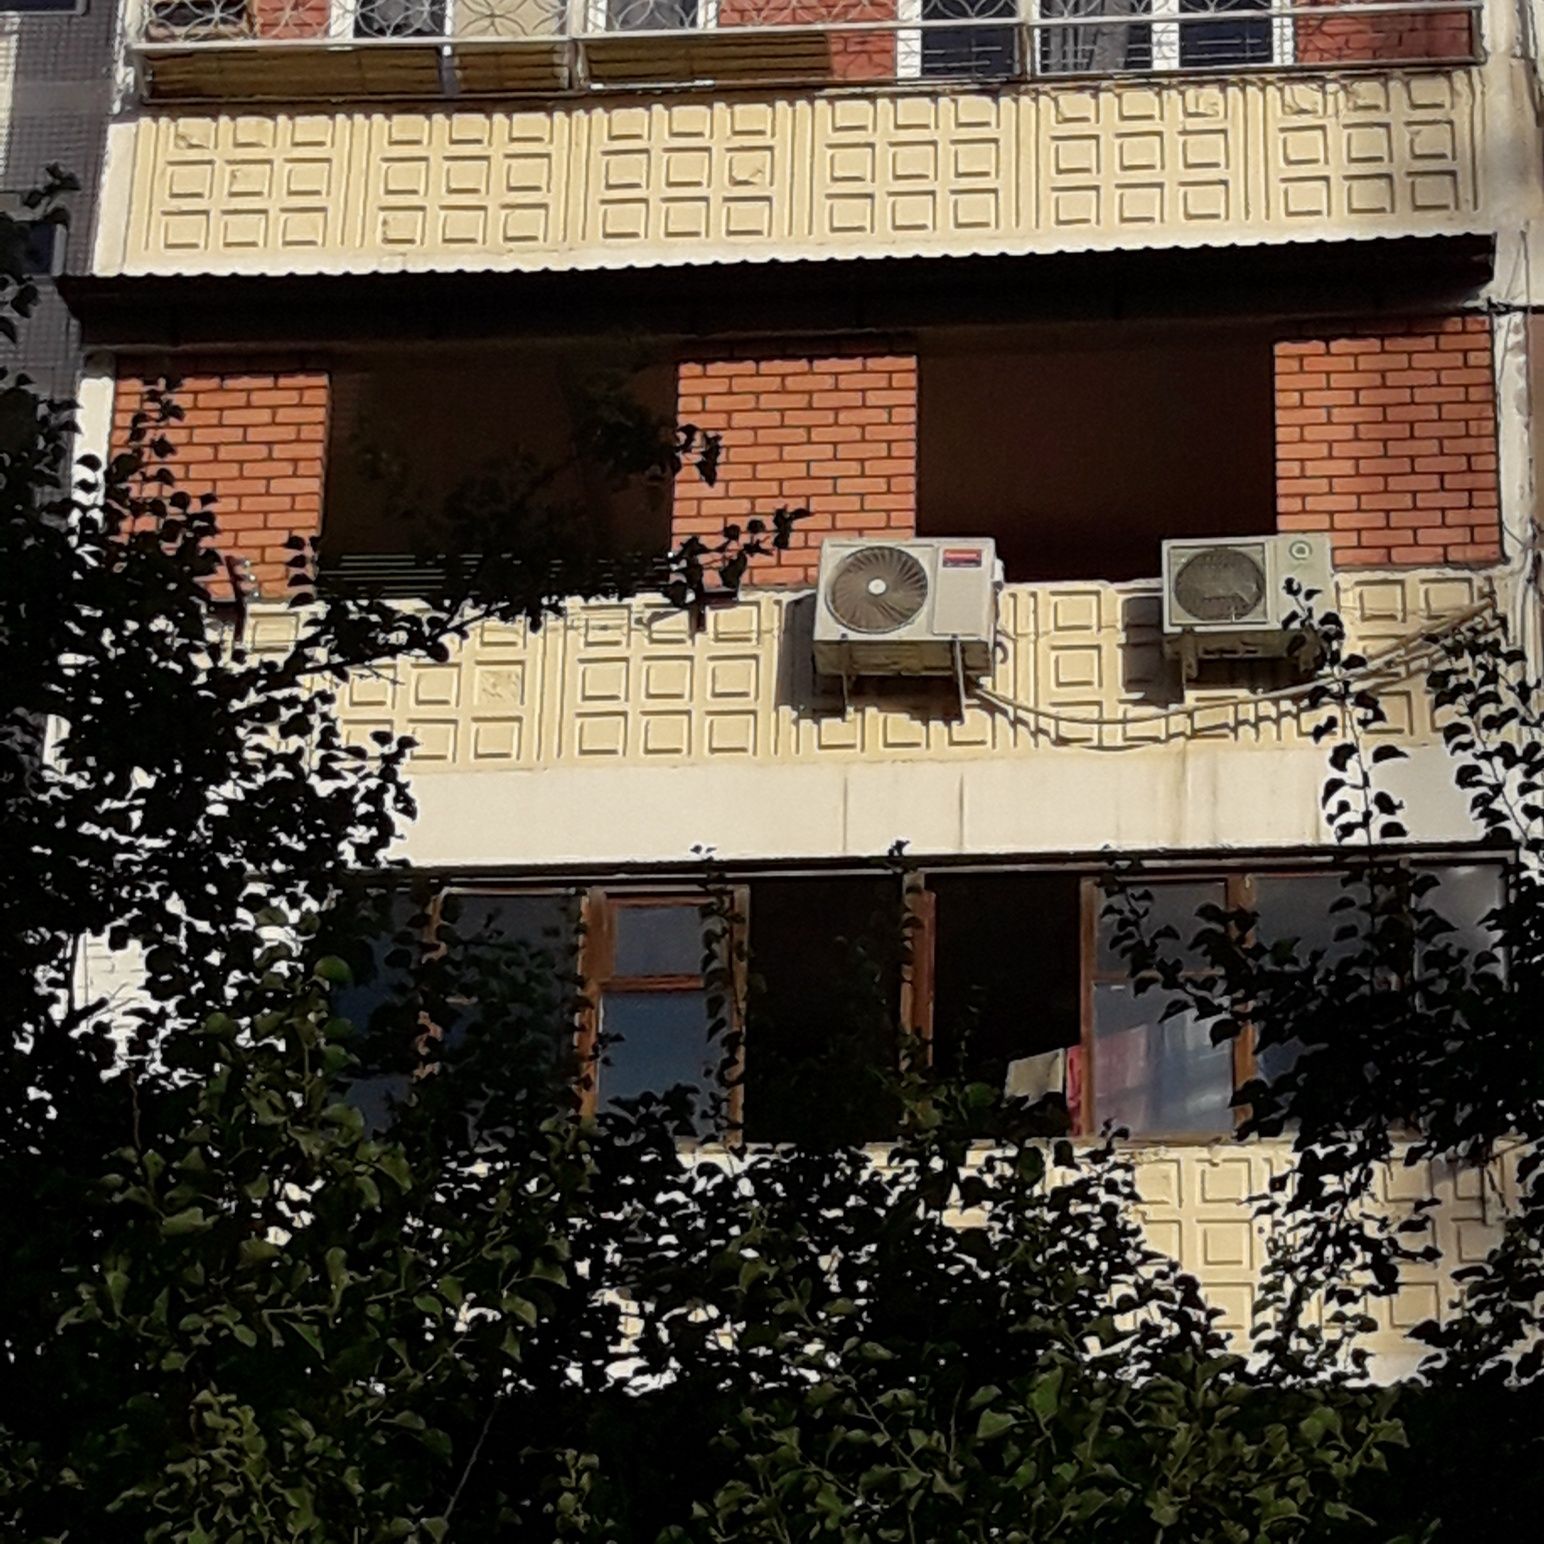 Кладка балкон за 3 деня + доставка стройматериалов